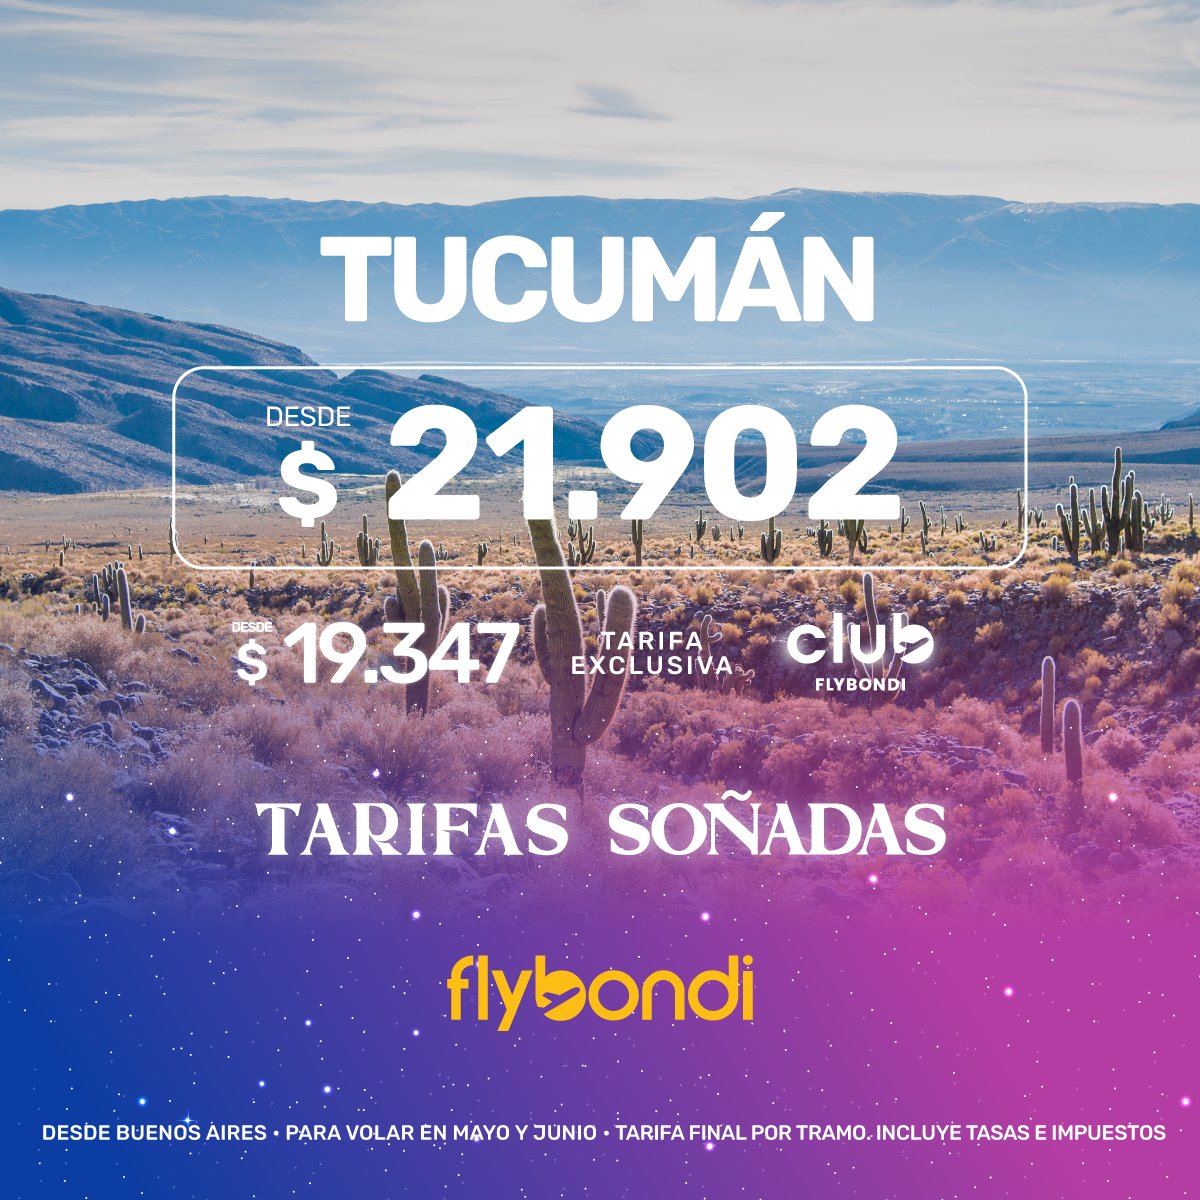 Antes de dormir, confirmá esas vacaciones soñadas 💤Mandale click acá 👉 bit.ly/3kl0aFn y volá a Tucumán #UltraLowCost ✈️